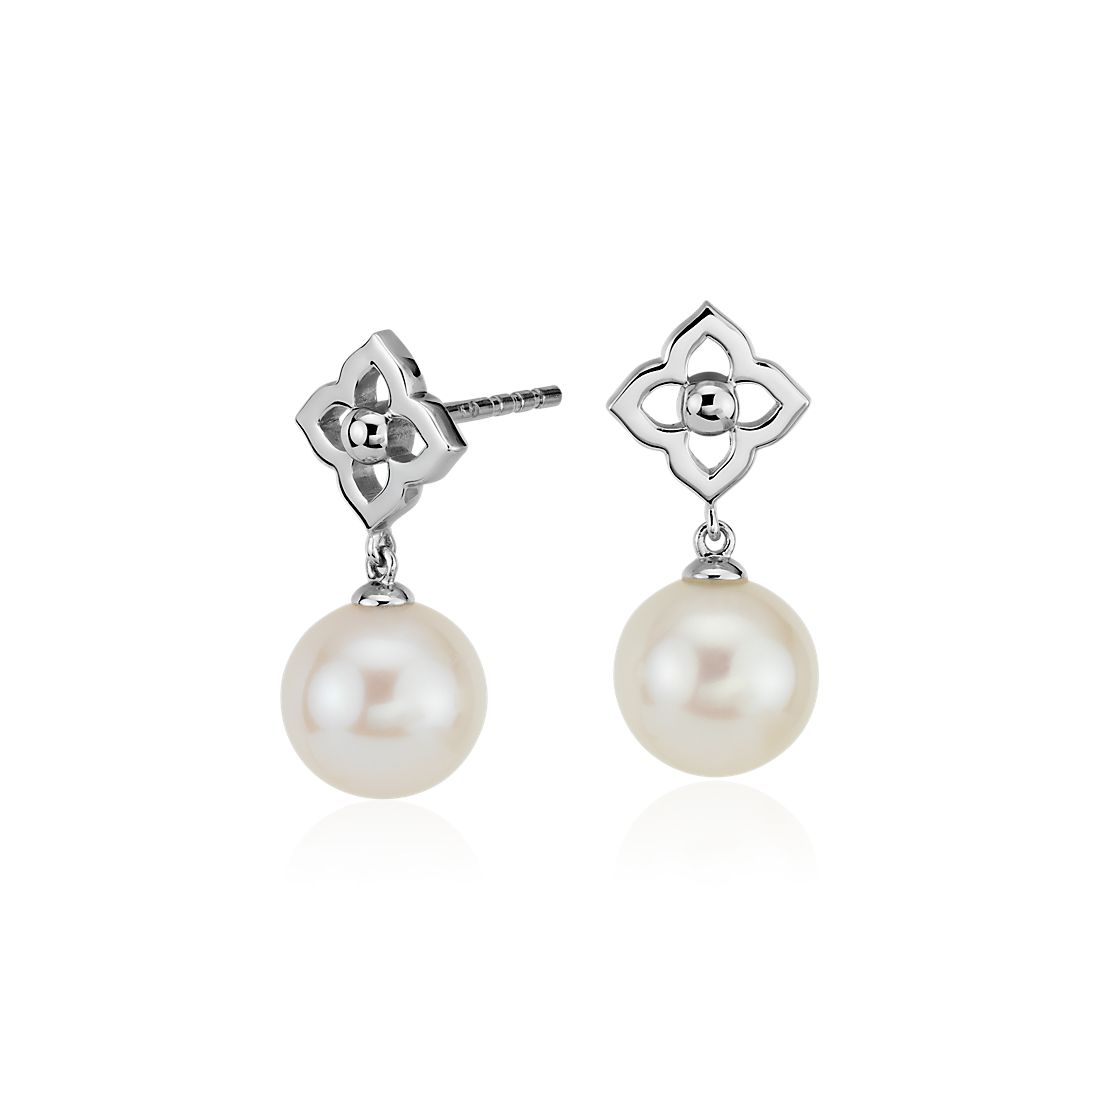 Bella Pearl Floral Cultured Pearl Earrings 